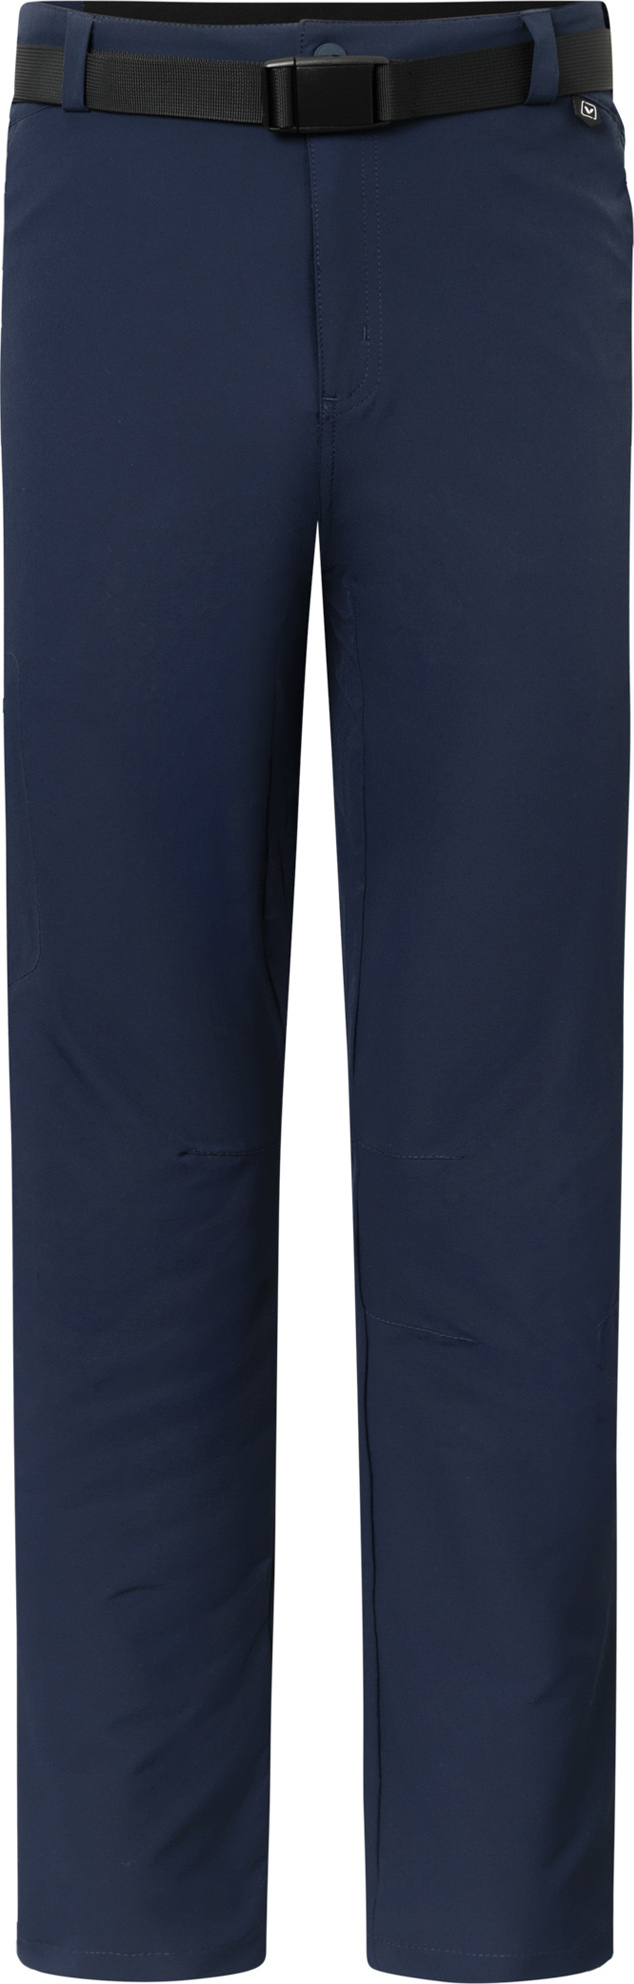 Pánské outdoorové kalhoty VIKING Expander modrá Velikost: S